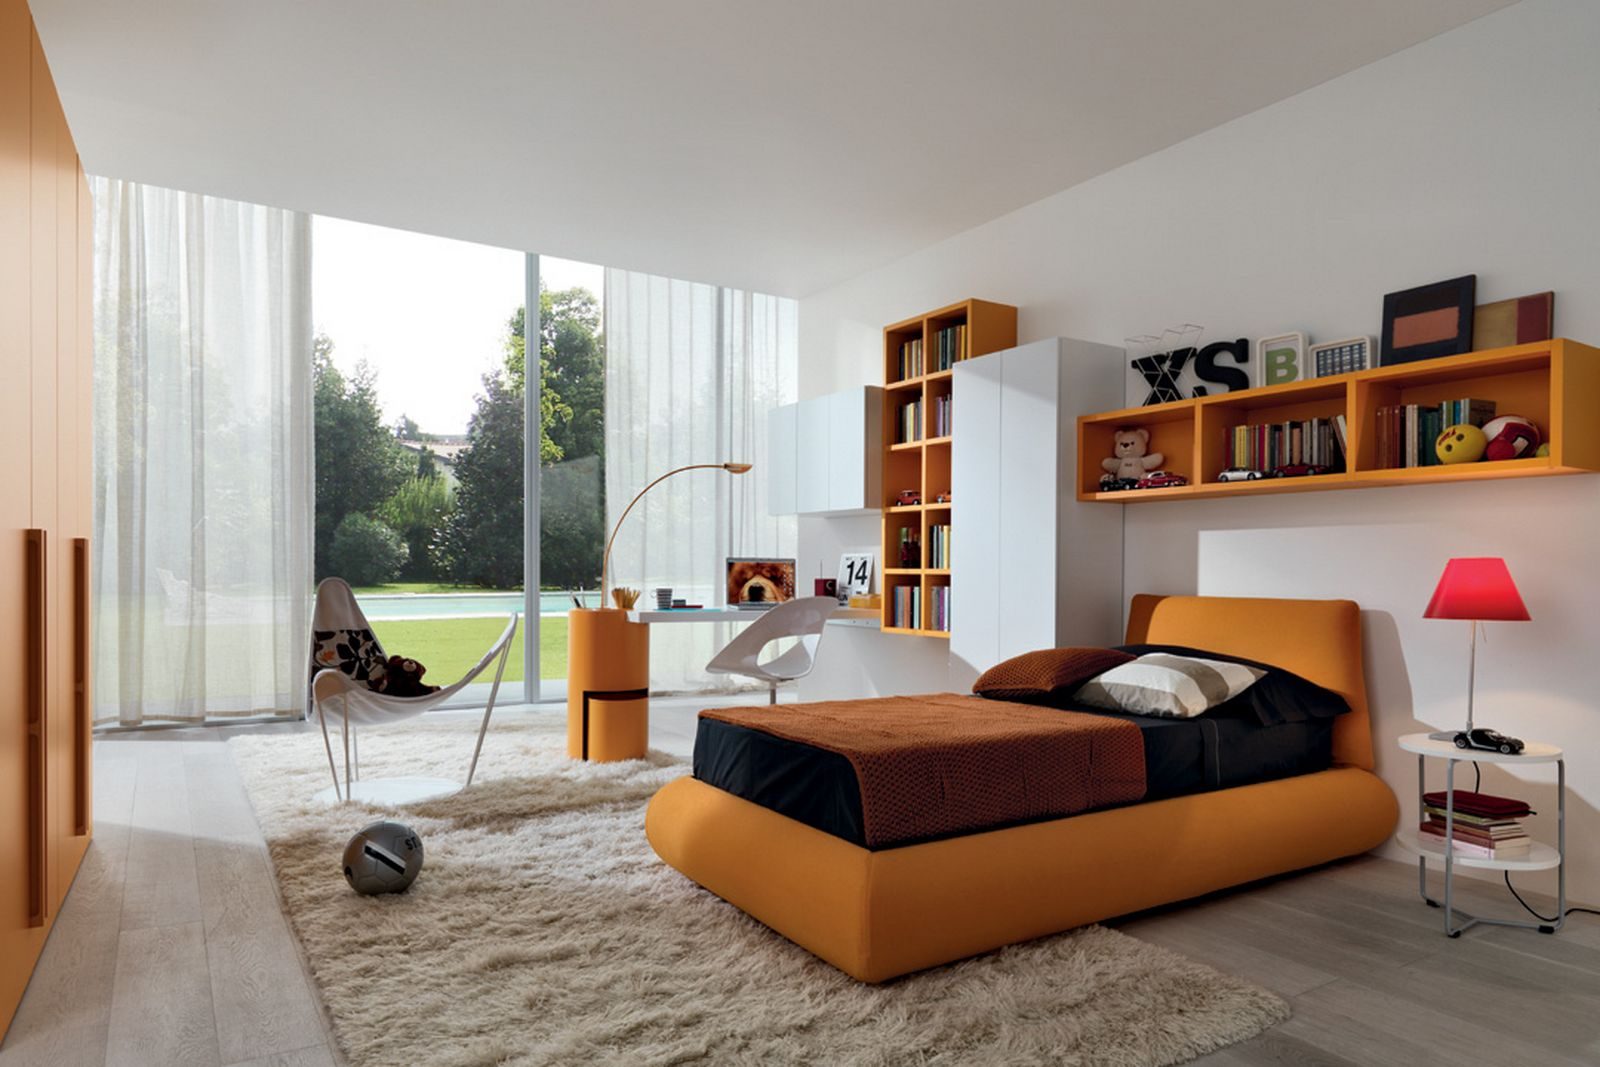 Dormitorio con accesorios naranjas :: Imágenes y fotos